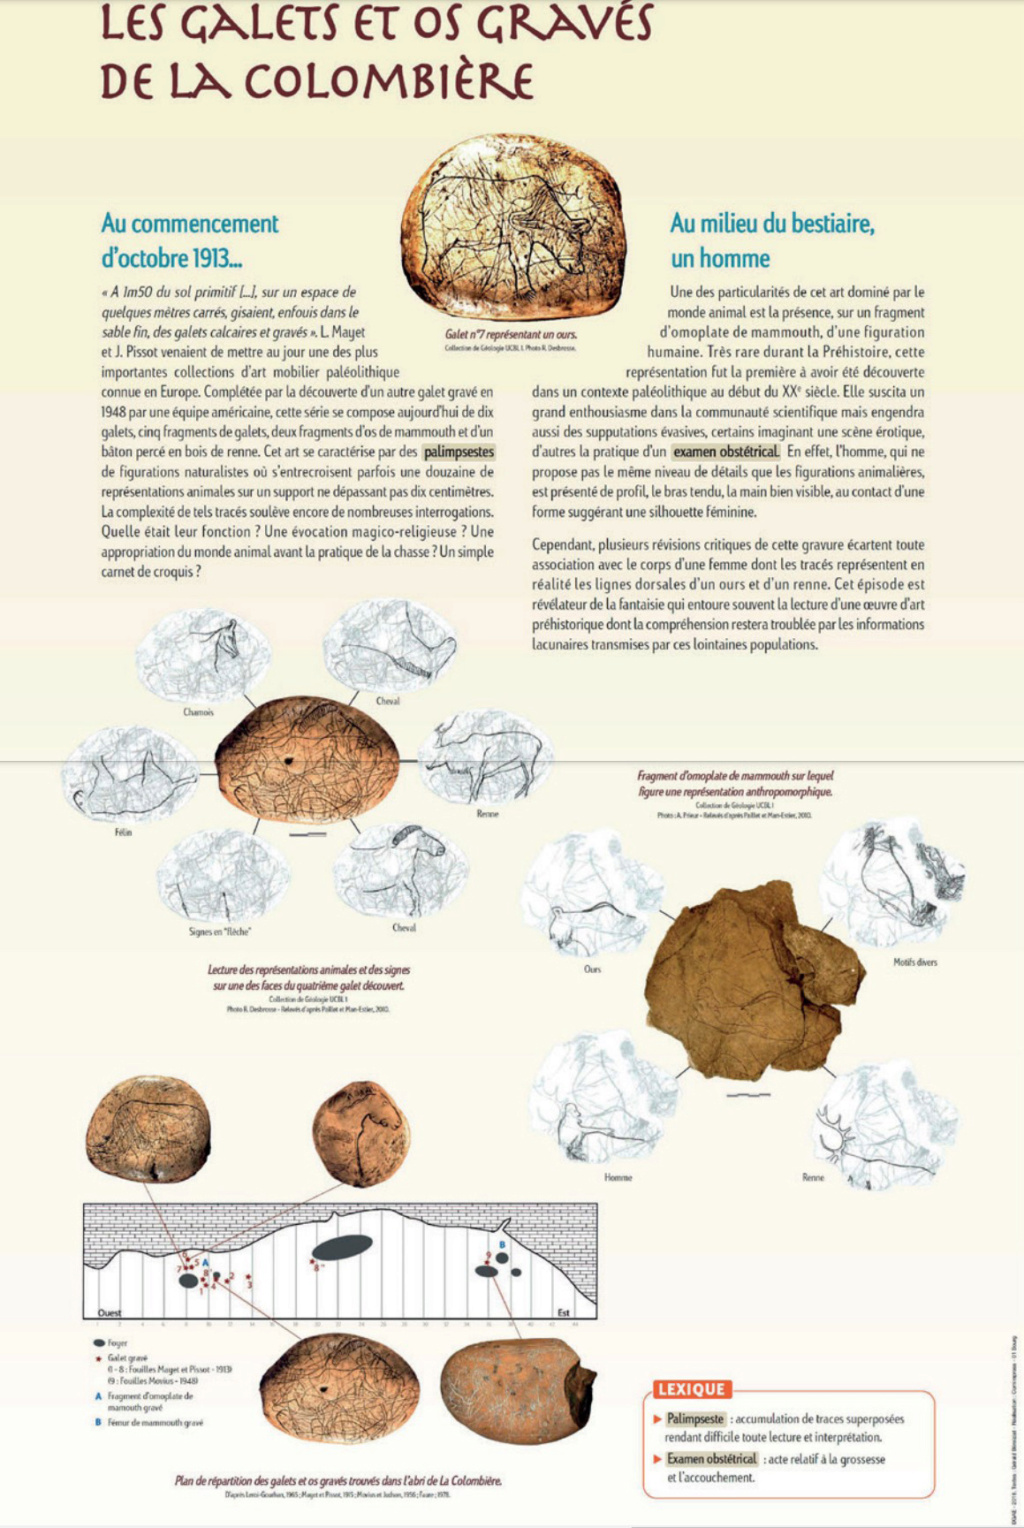 Galets et os gravés magdaléniens de la grotte de la Colombière (Neuville sur Ain / Poncin) - Page 2 Apsr_p10